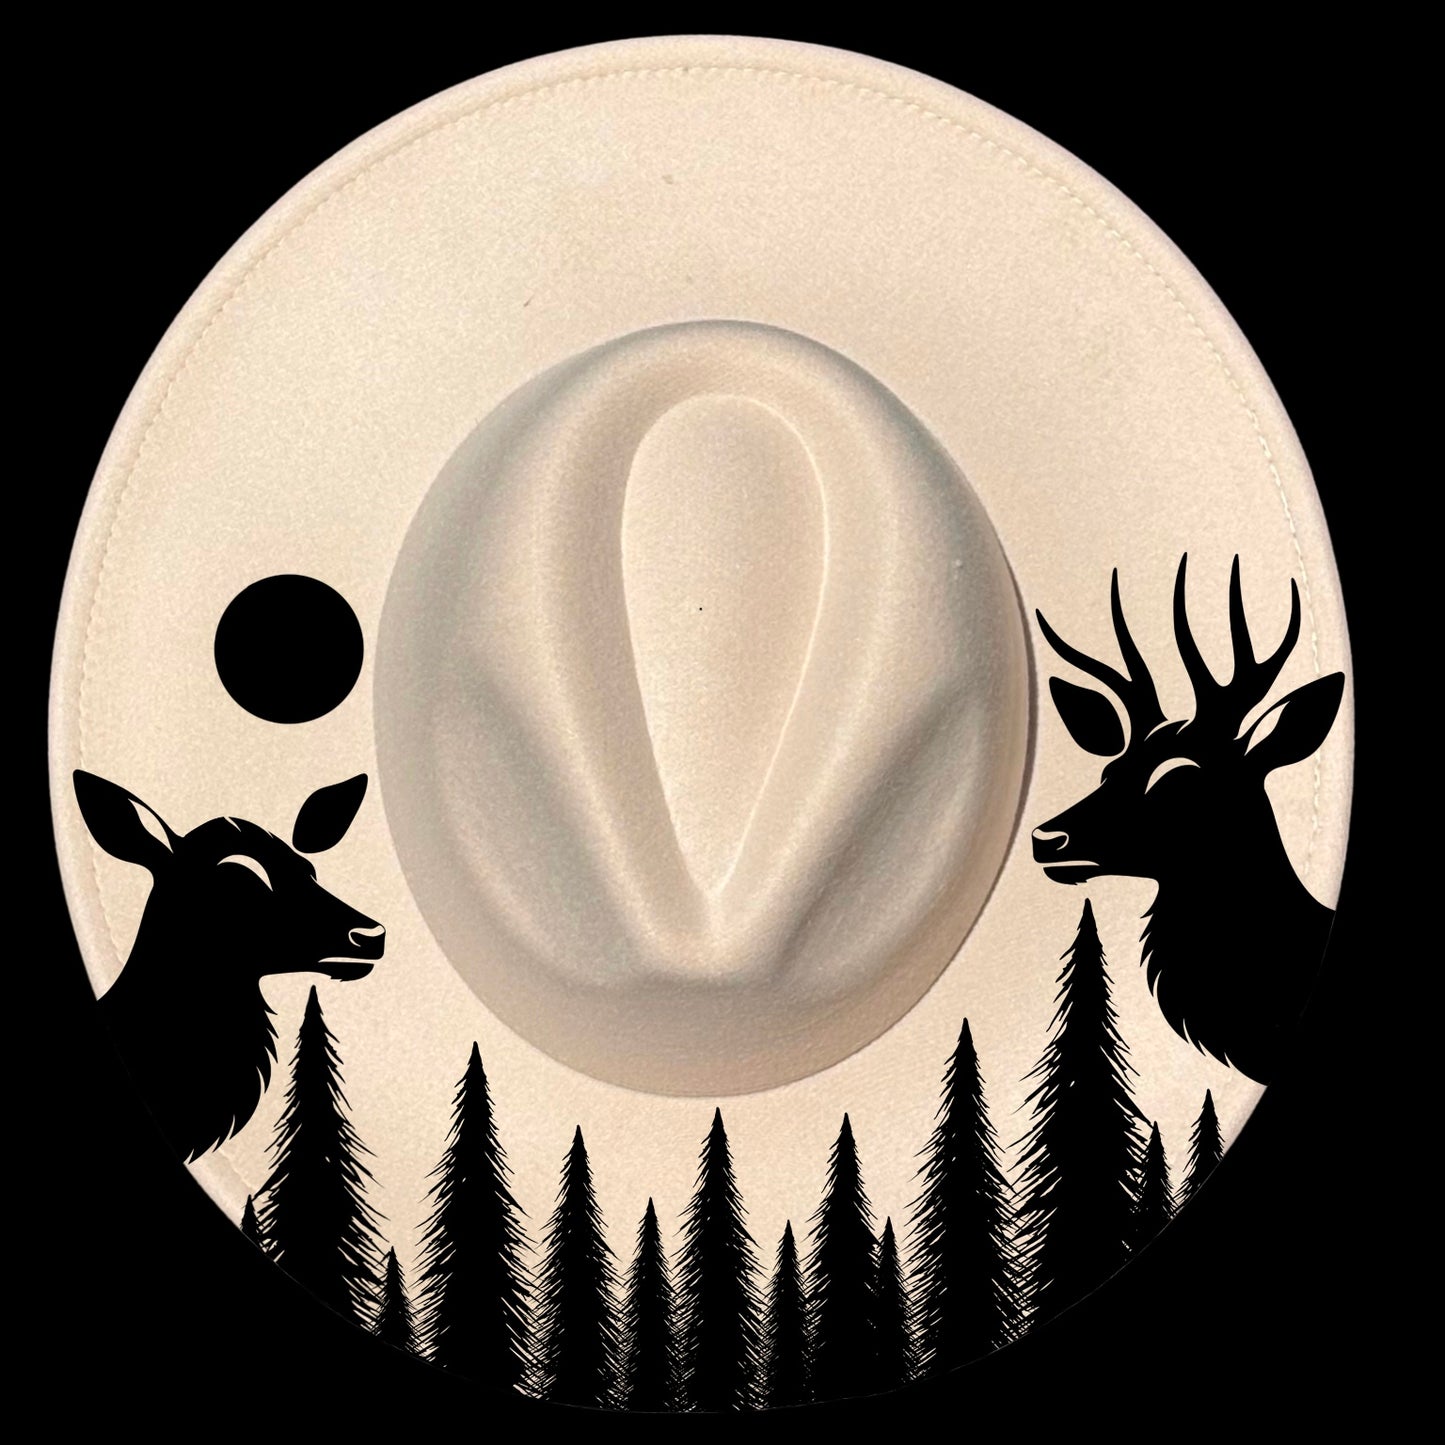 Deer Forest design on a wide brim hat